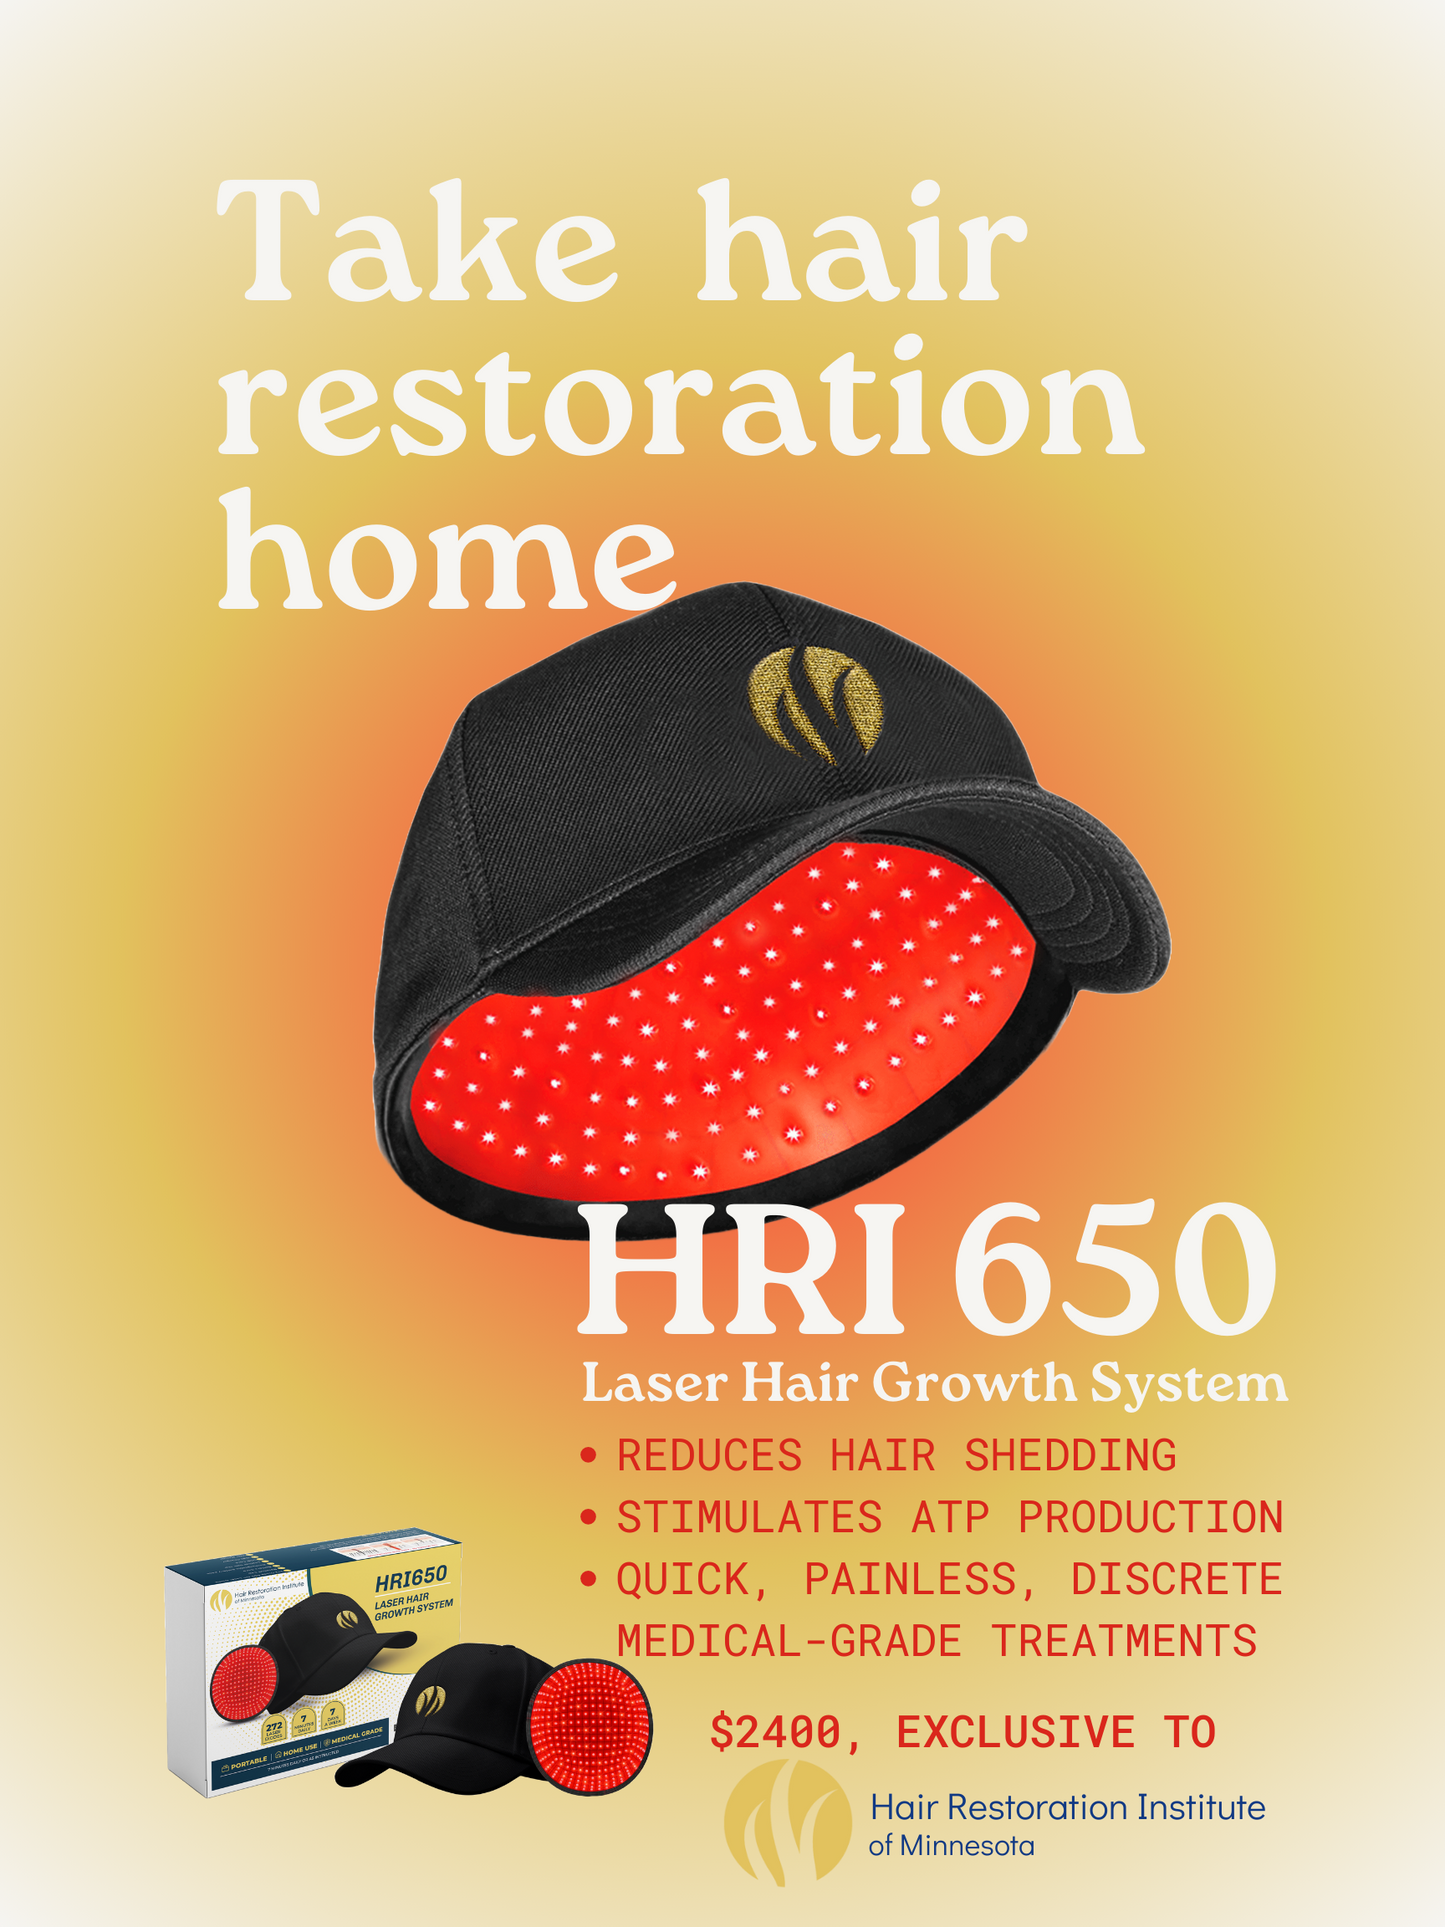 HRI650 Laser Hair Growth System